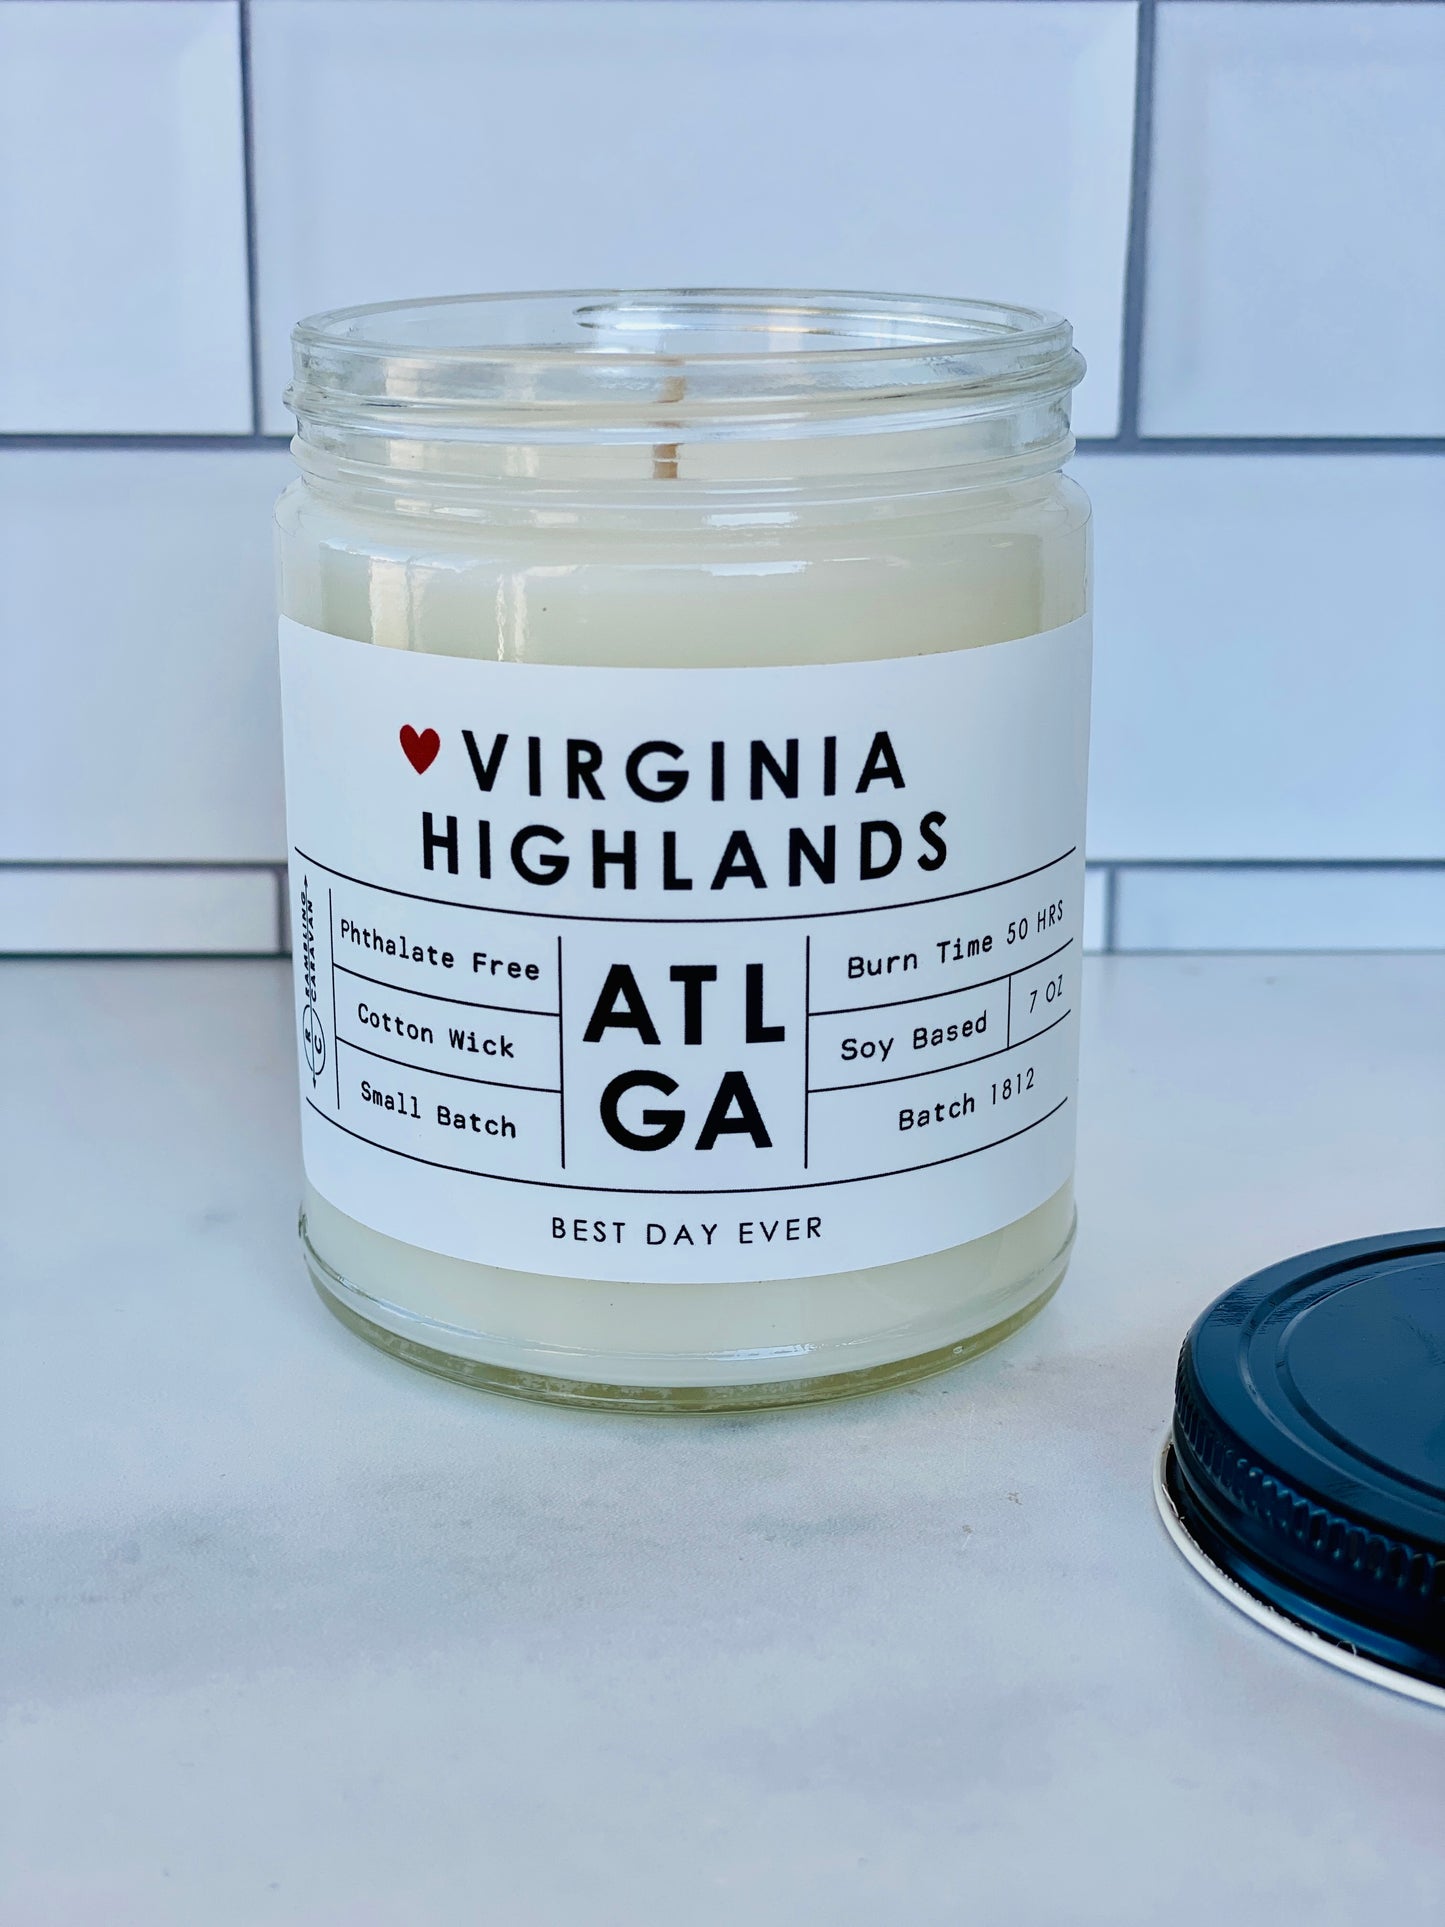 Virginia Highlands, Atlanta, GA Candle